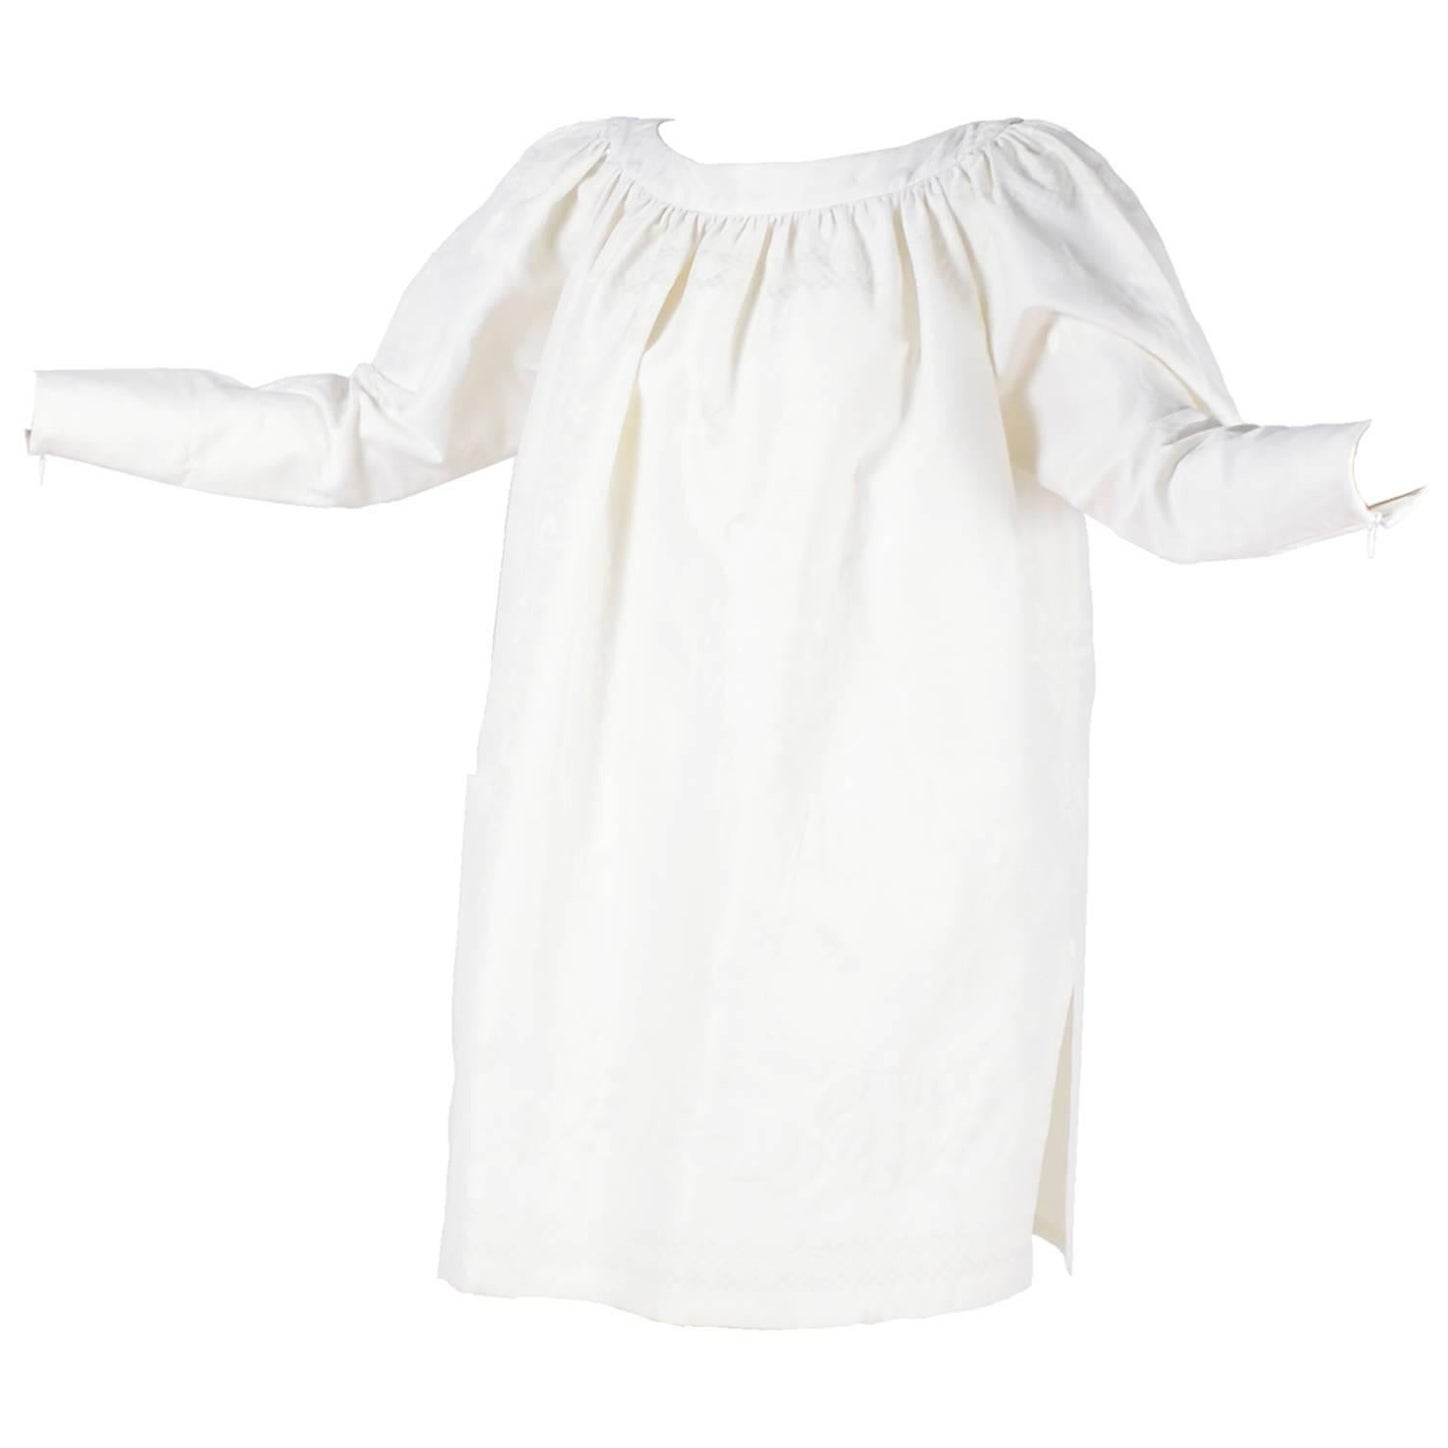 Christian Lacroix - Tunique ou robe en lin damas blanc vintage avec étiquette d'origine, années 1980